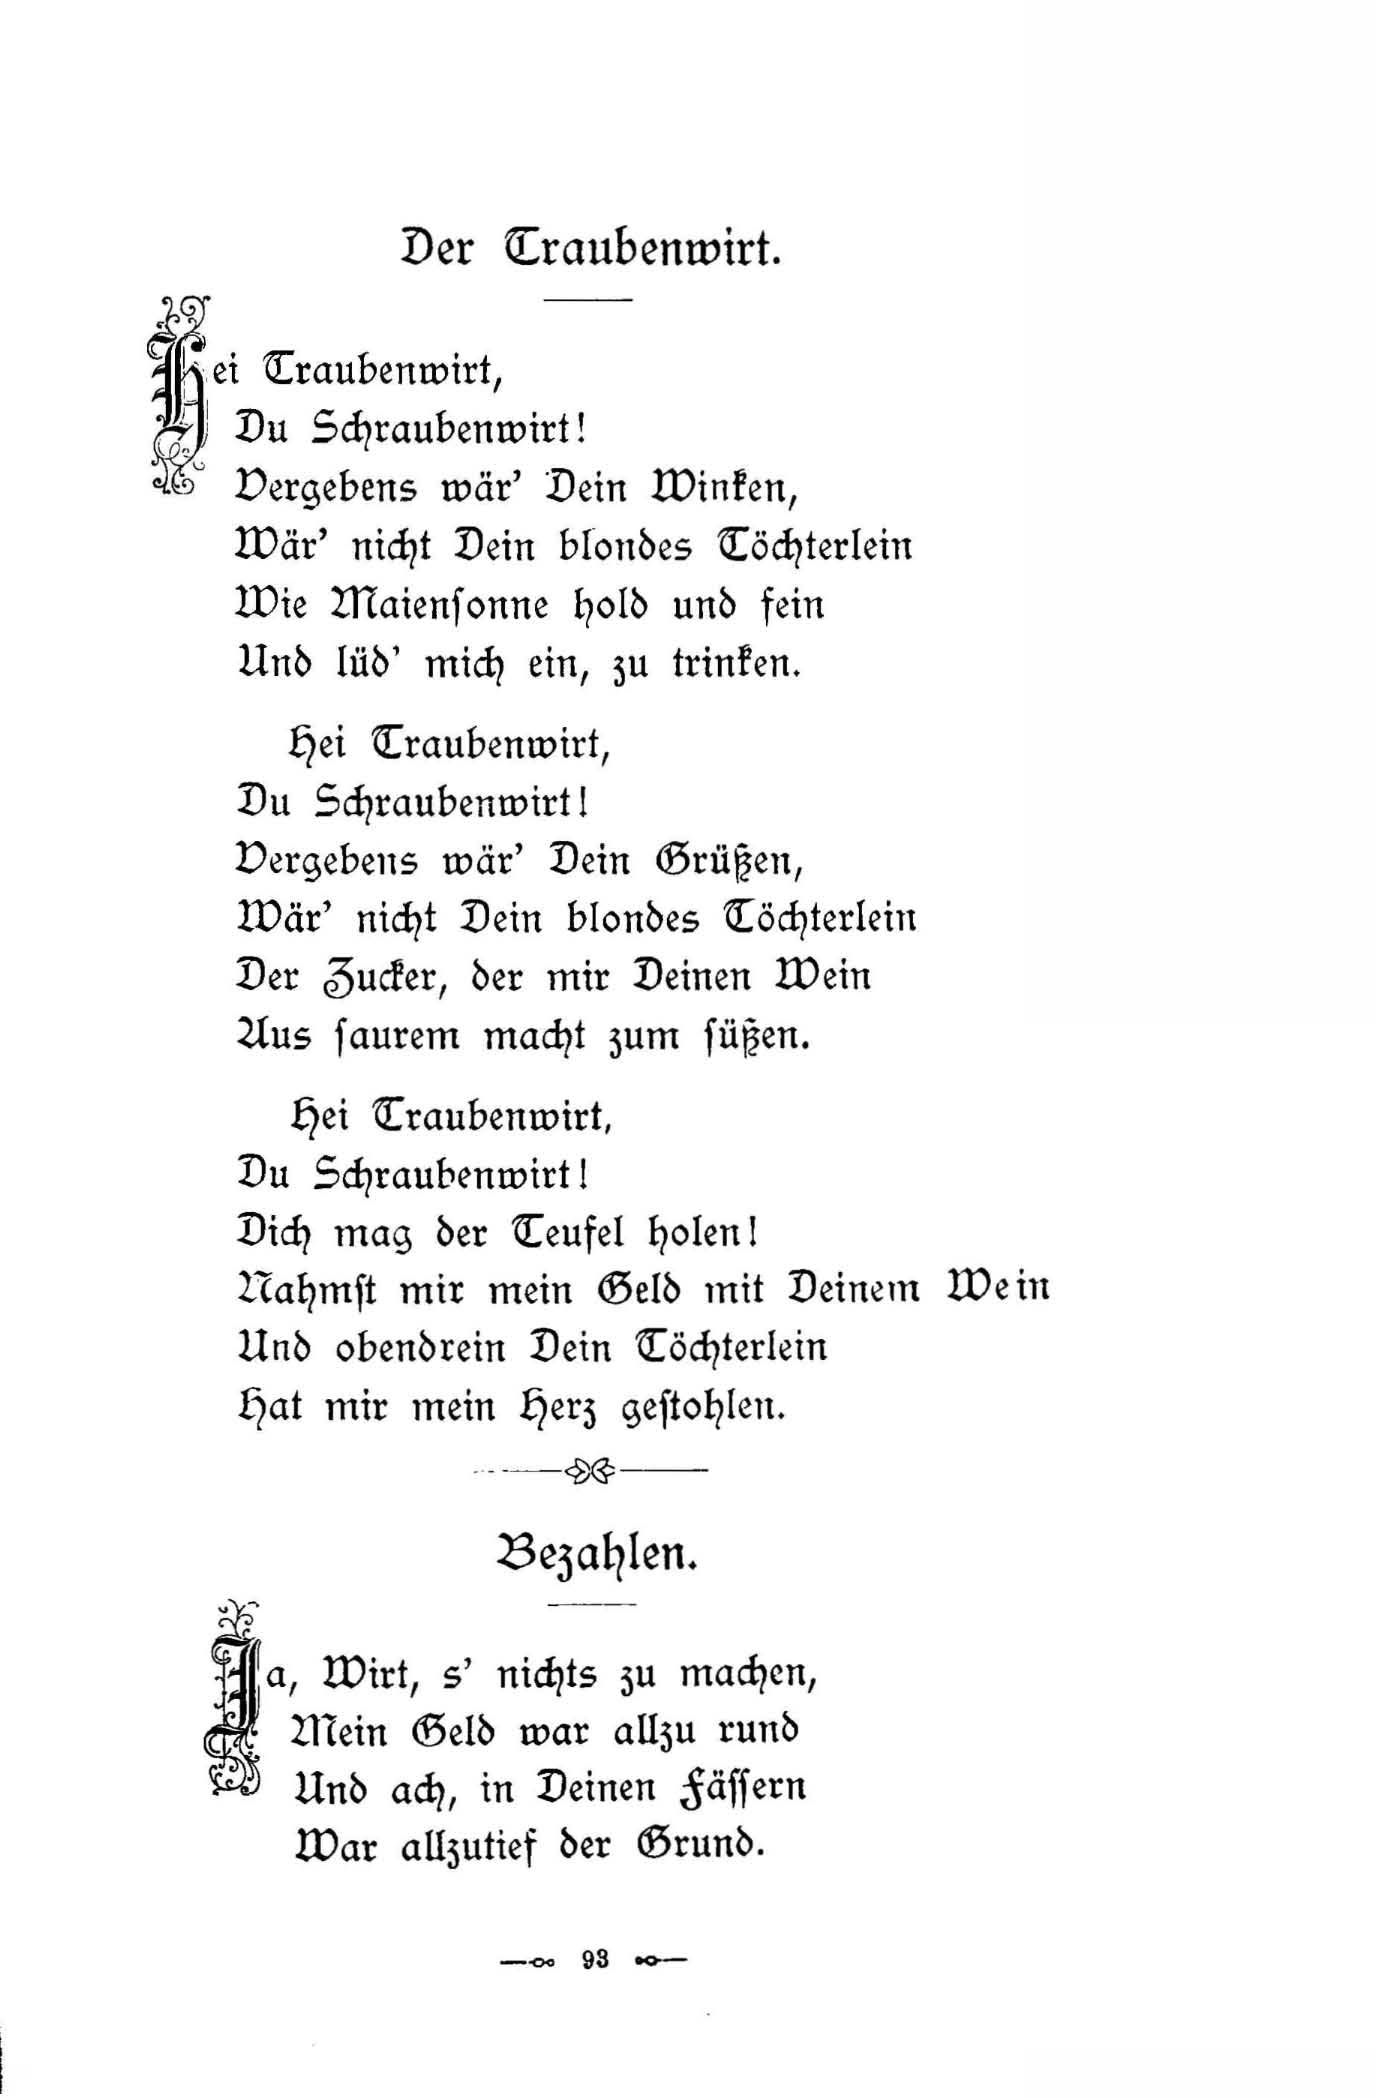 Der Traubenwirt (1896) | 1. (93) Main body of text